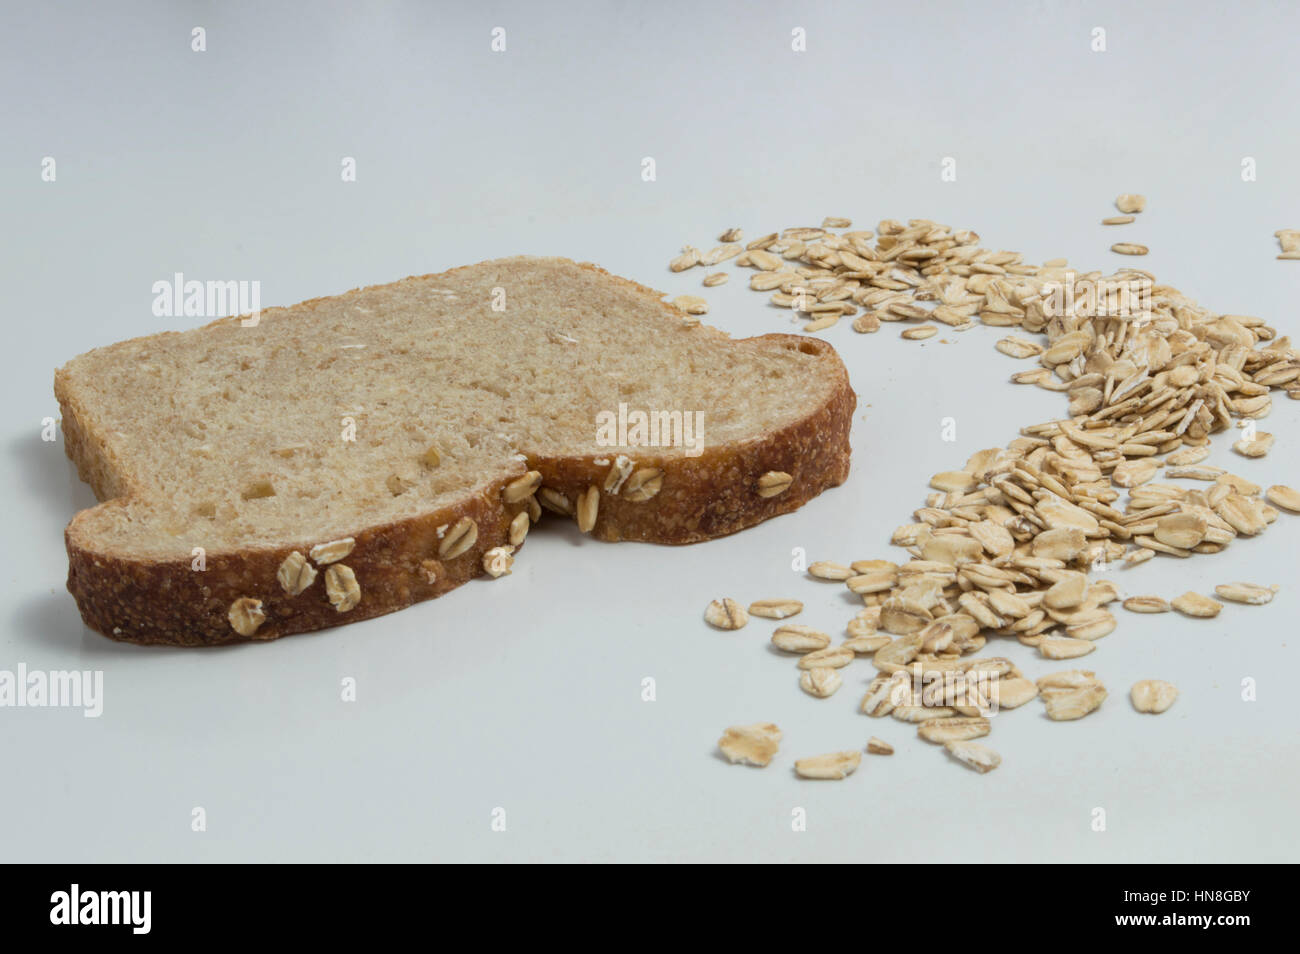 Tranche de pain de blé entier avec de l'avoine sur fond blanc Banque D'Images